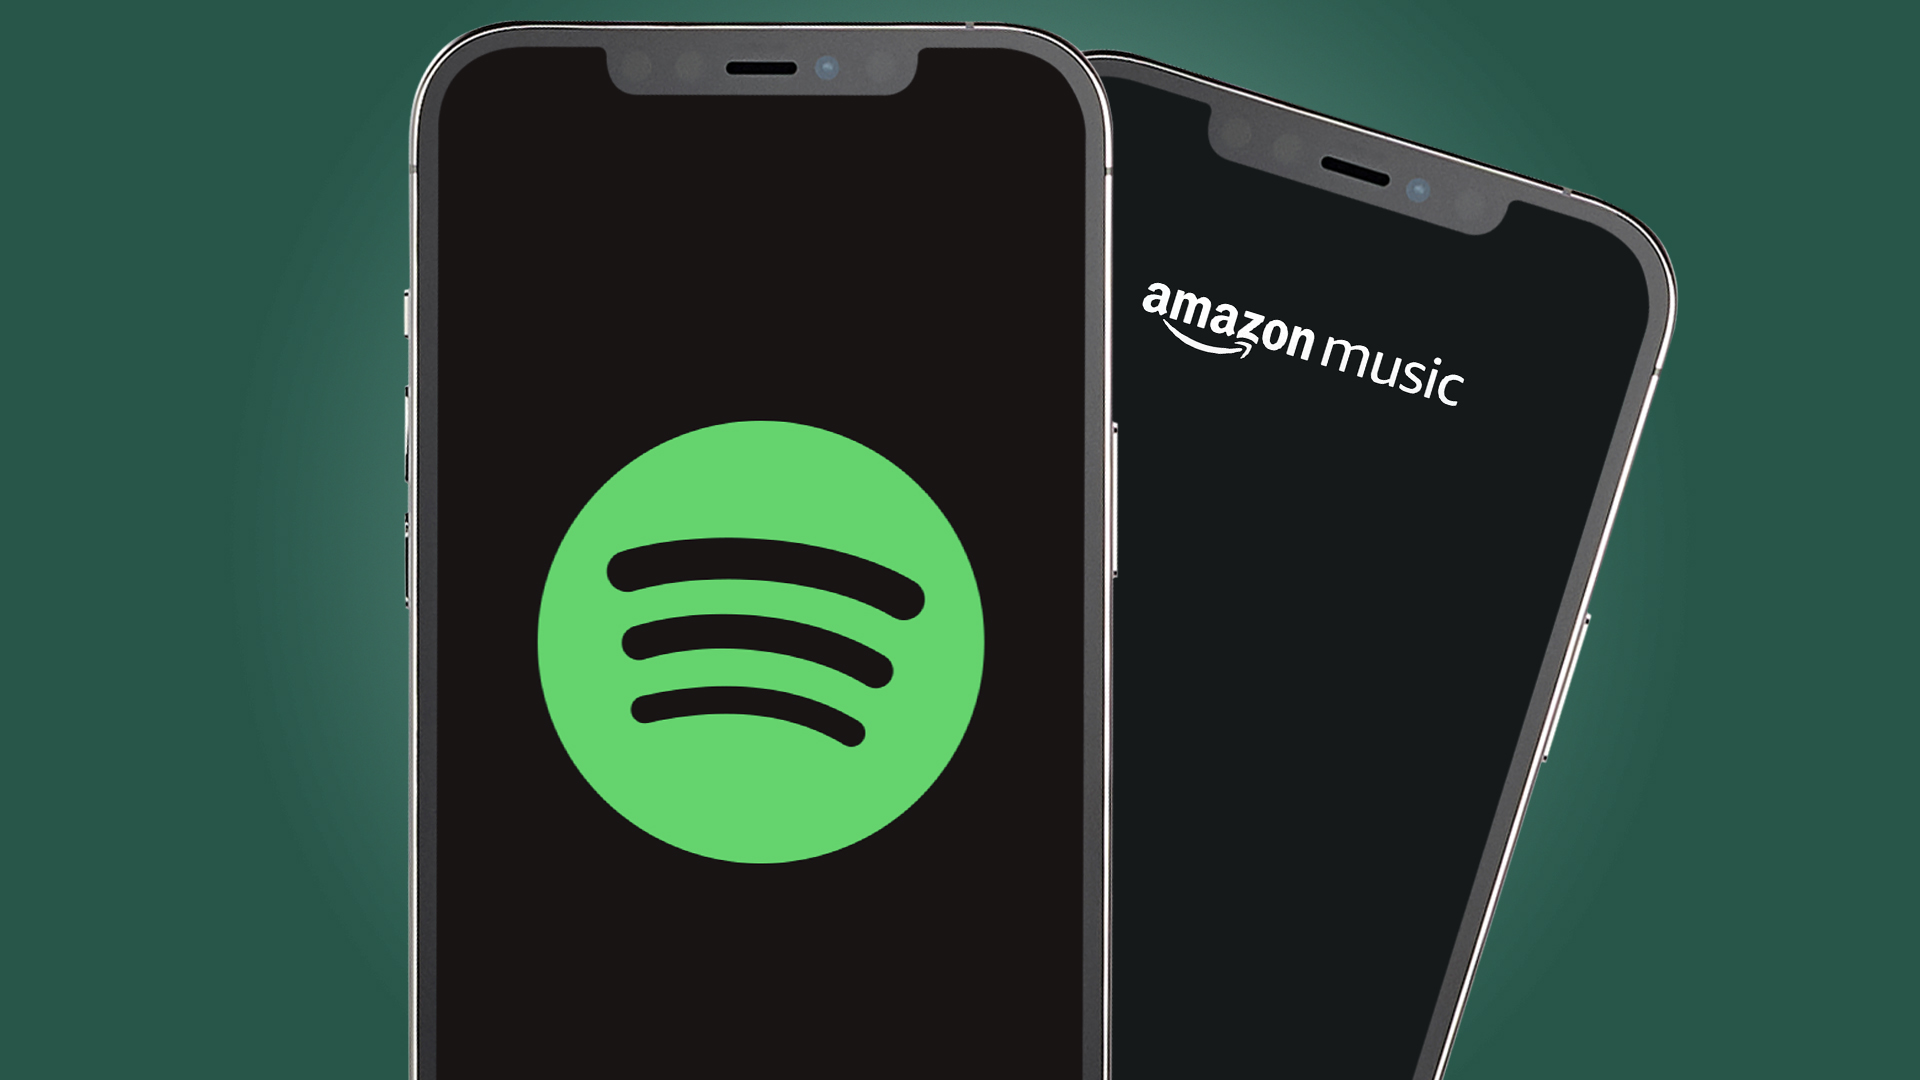 Spotify вскоре может сравниться с несвоевременным повышением цен Amazon Music Unlimited